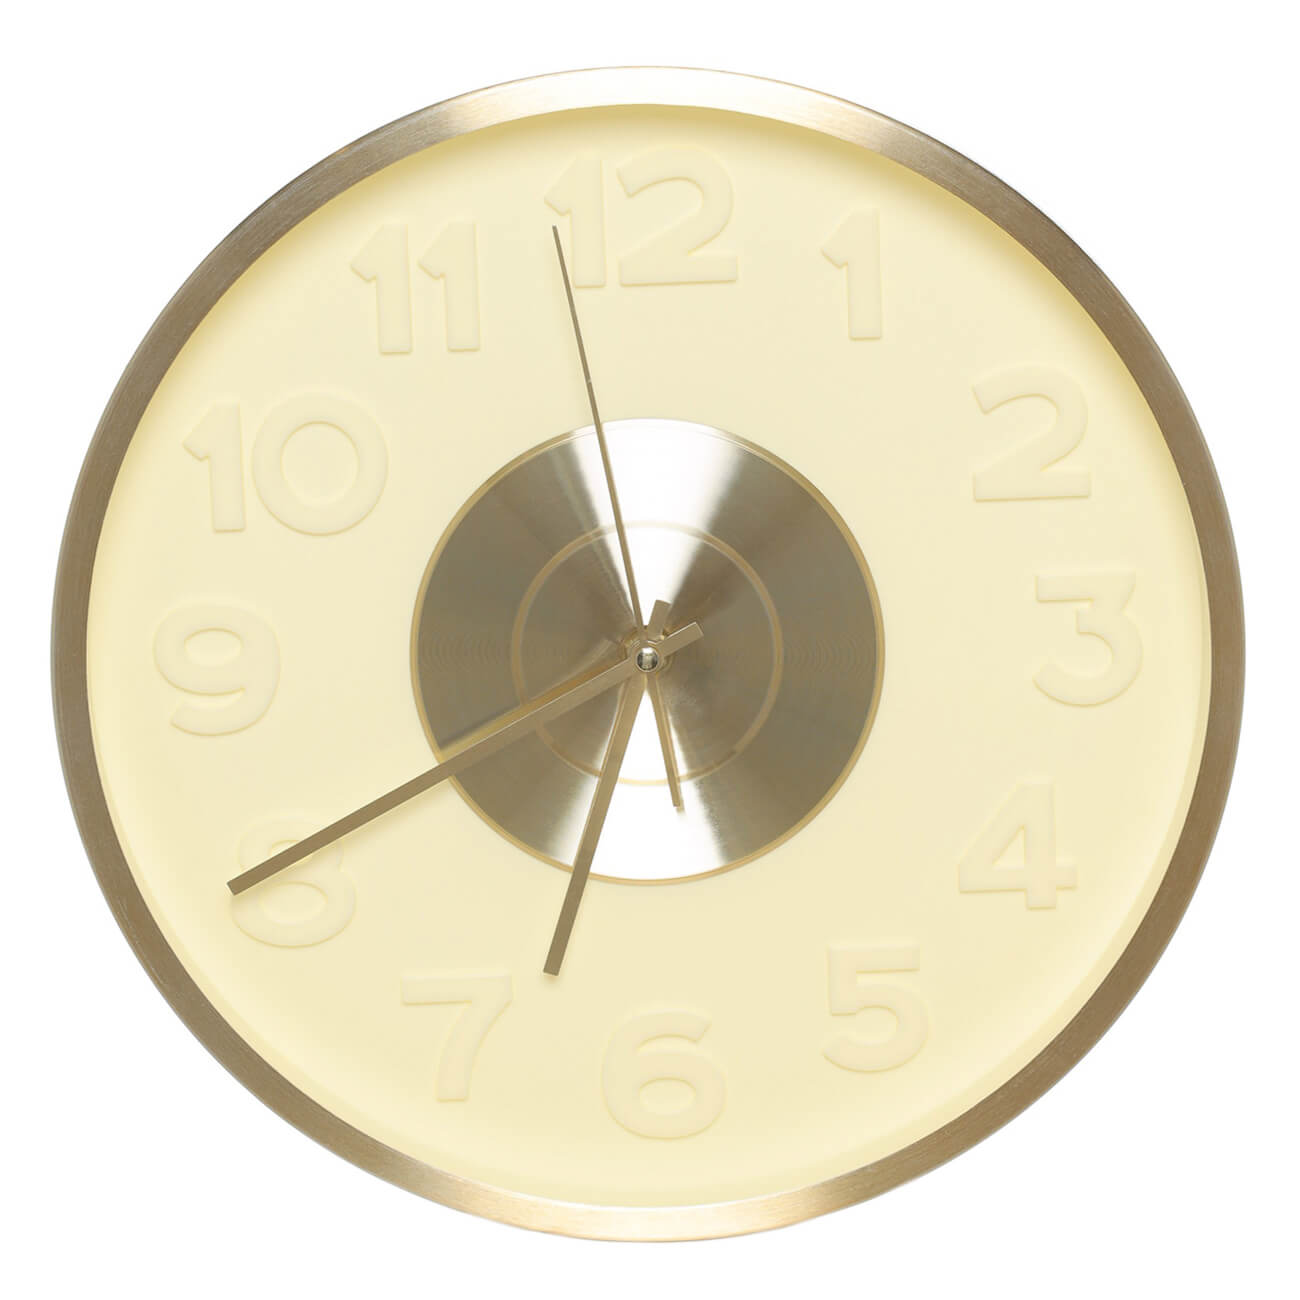 Часы настенные, 30 см, с подсветкой, пластик/стекло, круглые, золотистые, Fantastic gold изображение № 1